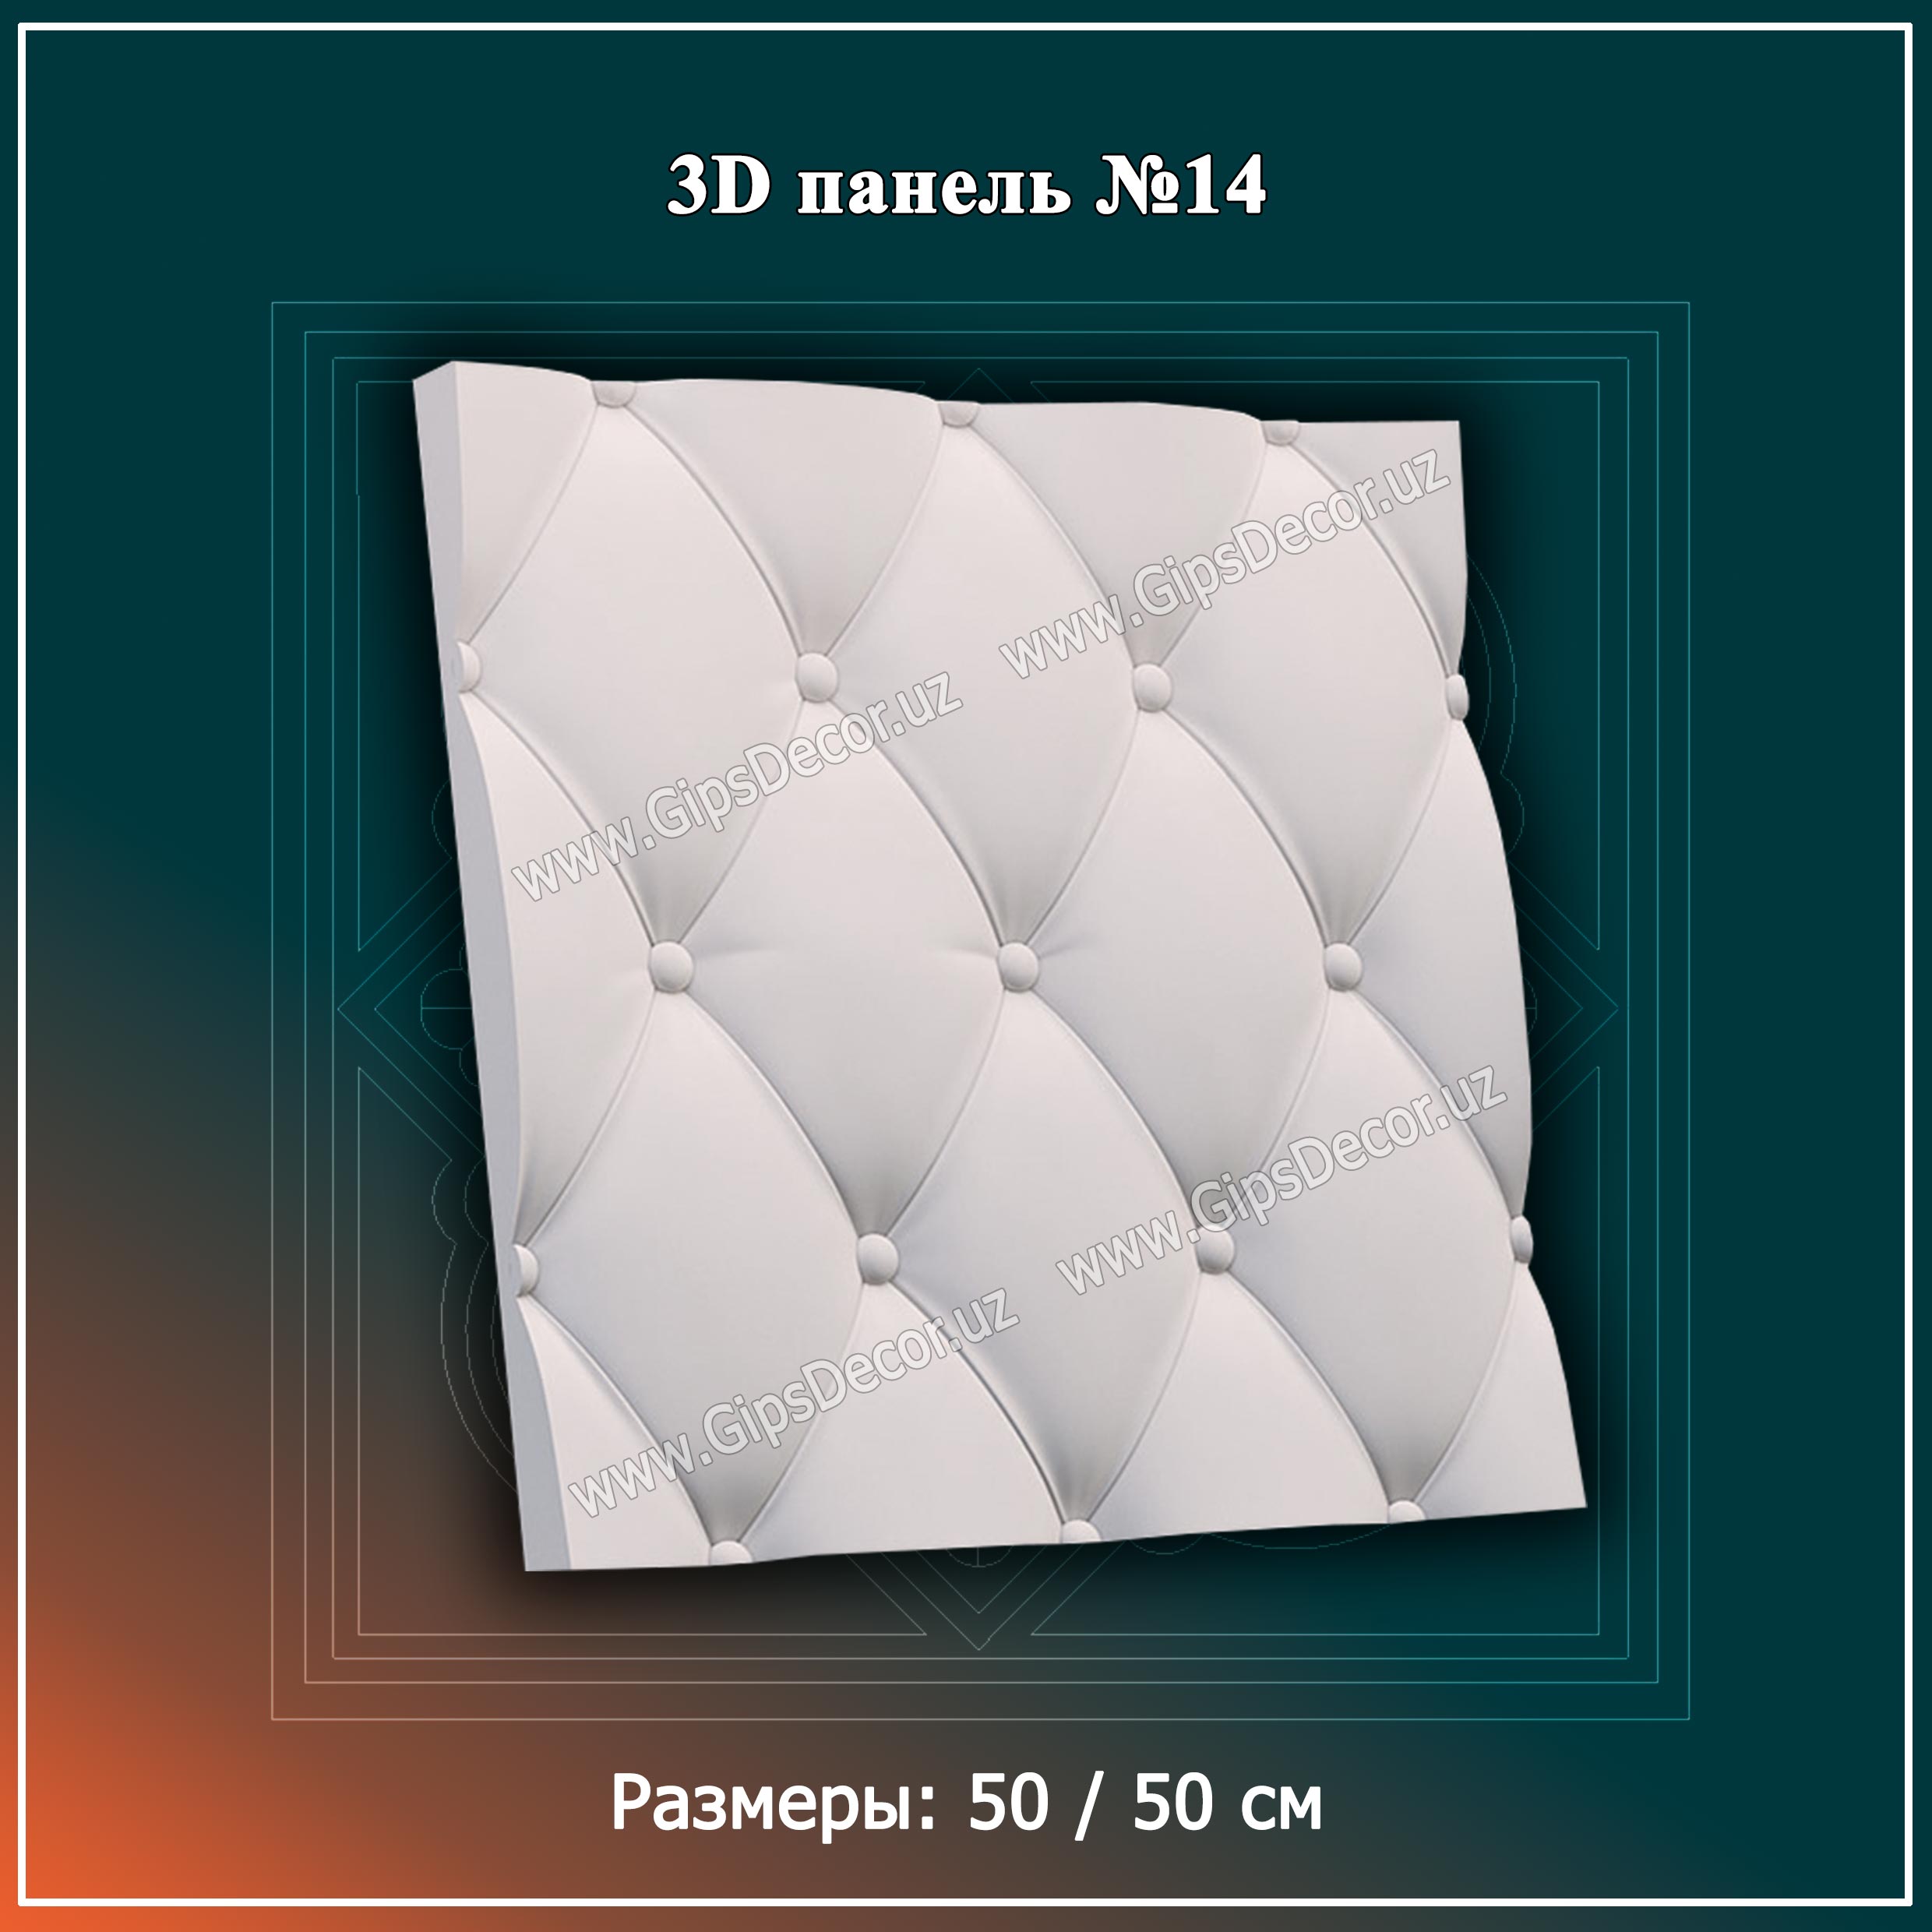 3D панель №14